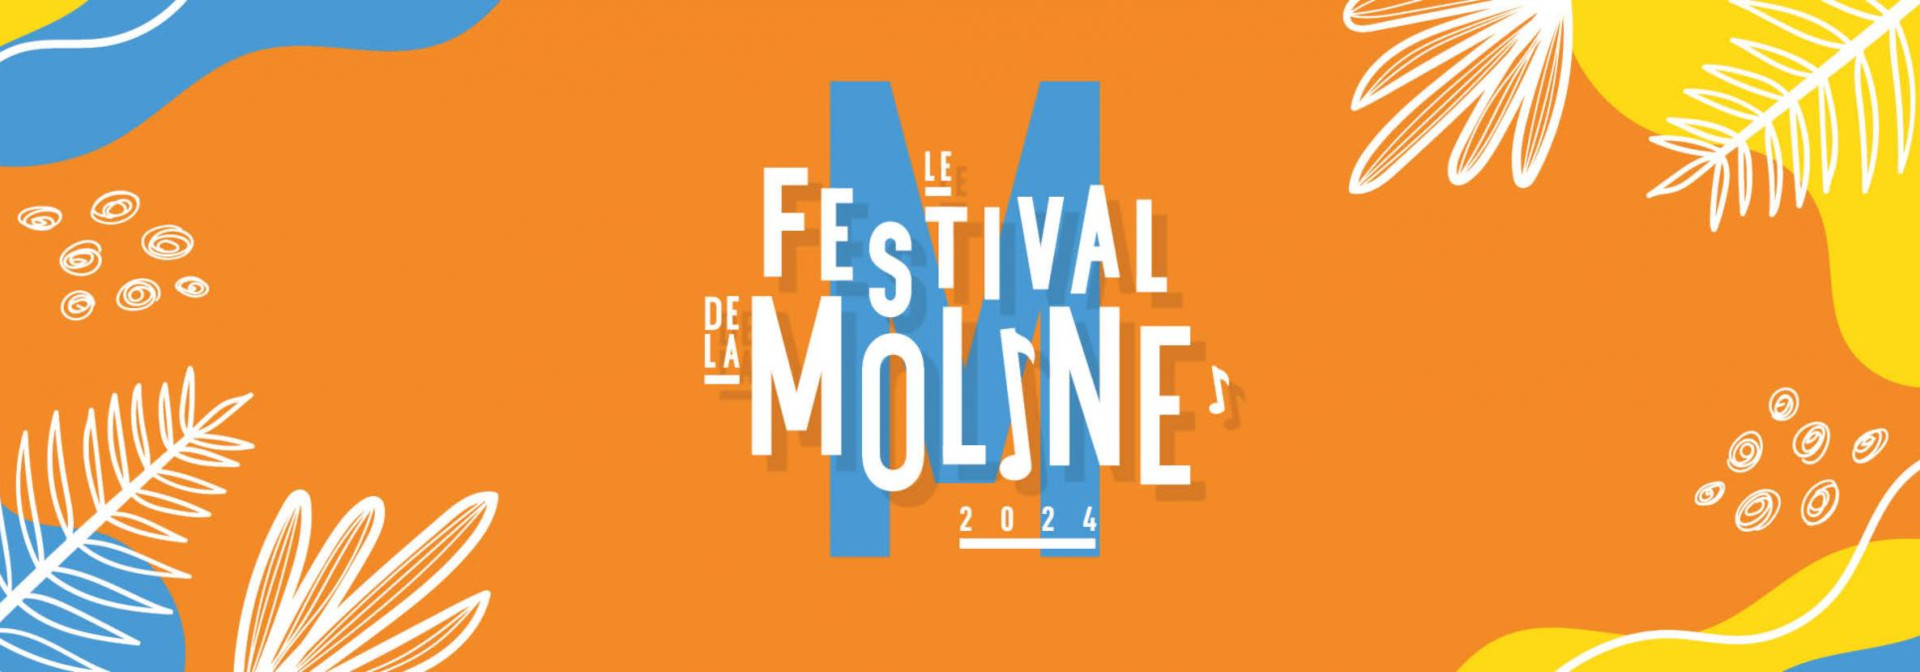 Festival de la Moline 2024